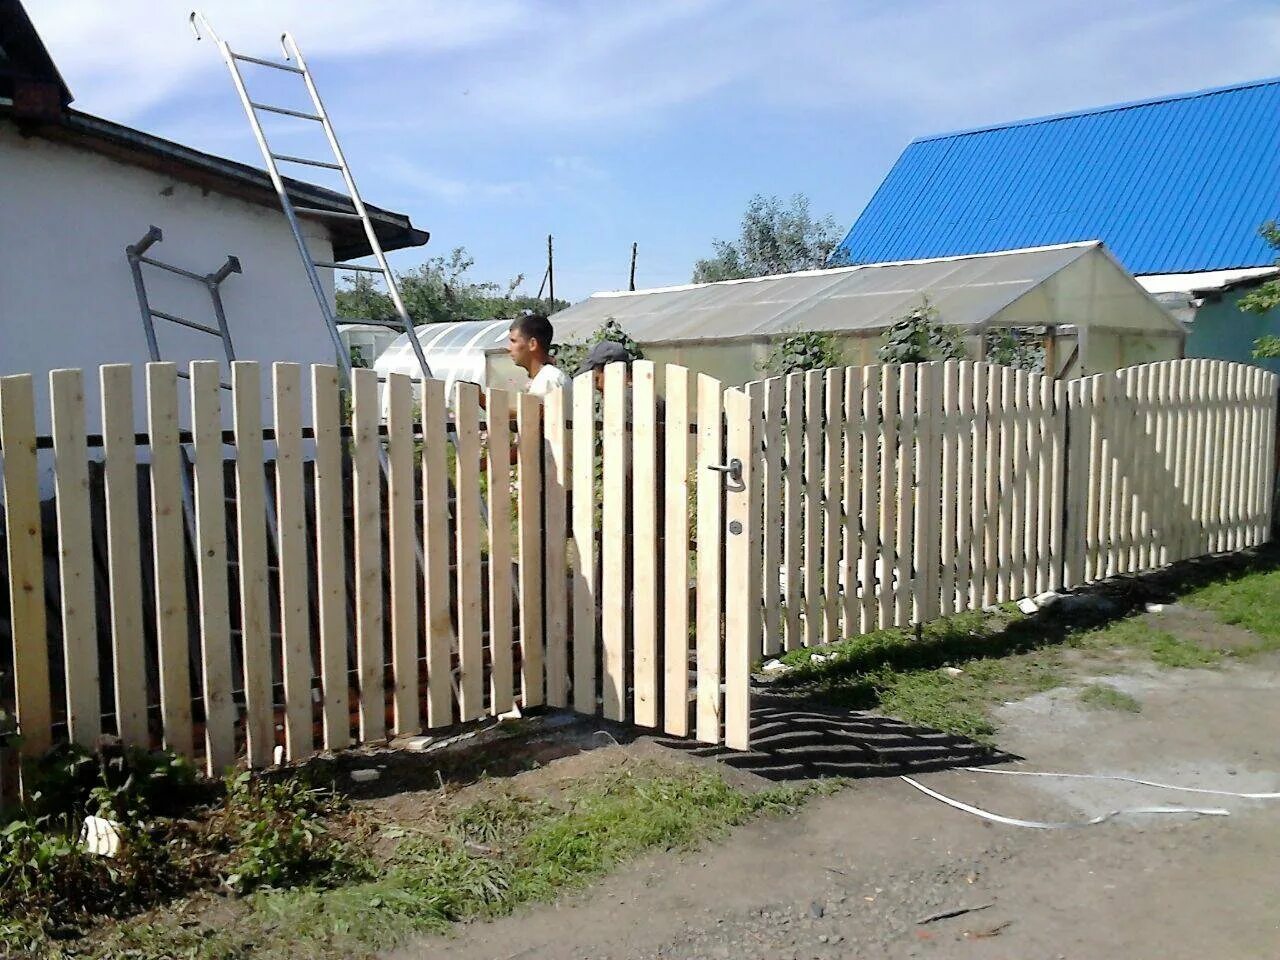 Штакетник 1.5. Забор из штакетника деревянного. Забор штакетник 1.5 метра. Метровый забор из штакетника деревянного. Забор деревянный 1.5 метра.